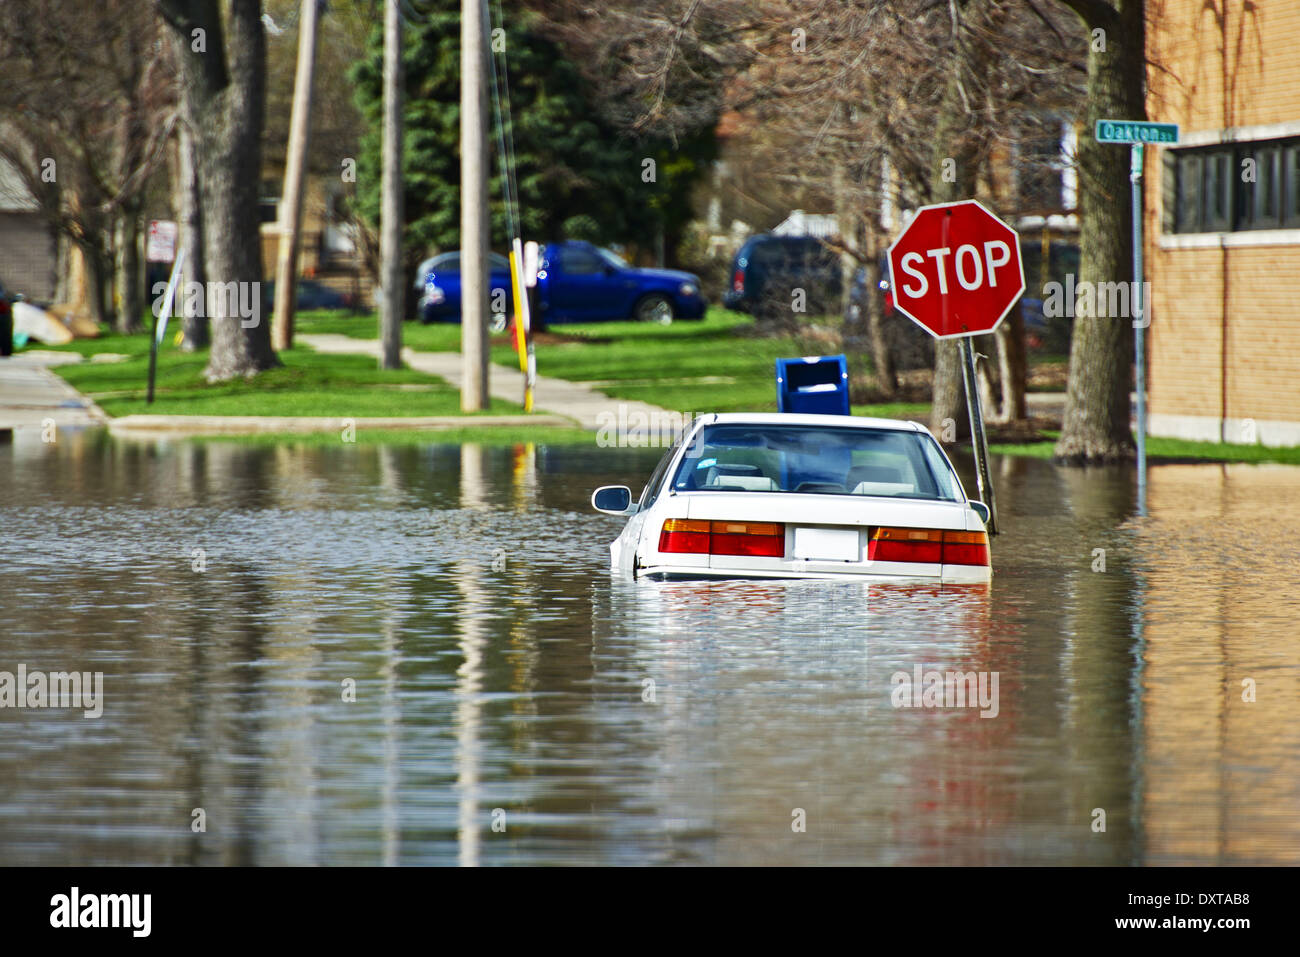 Auto unter Wasser. Fahrzeug von in Des Plains, IL, USA-Hochwasser  überflutet. Überflutete Straßen nach paar Tagen intensiver Regen  Stockfotografie - Alamy